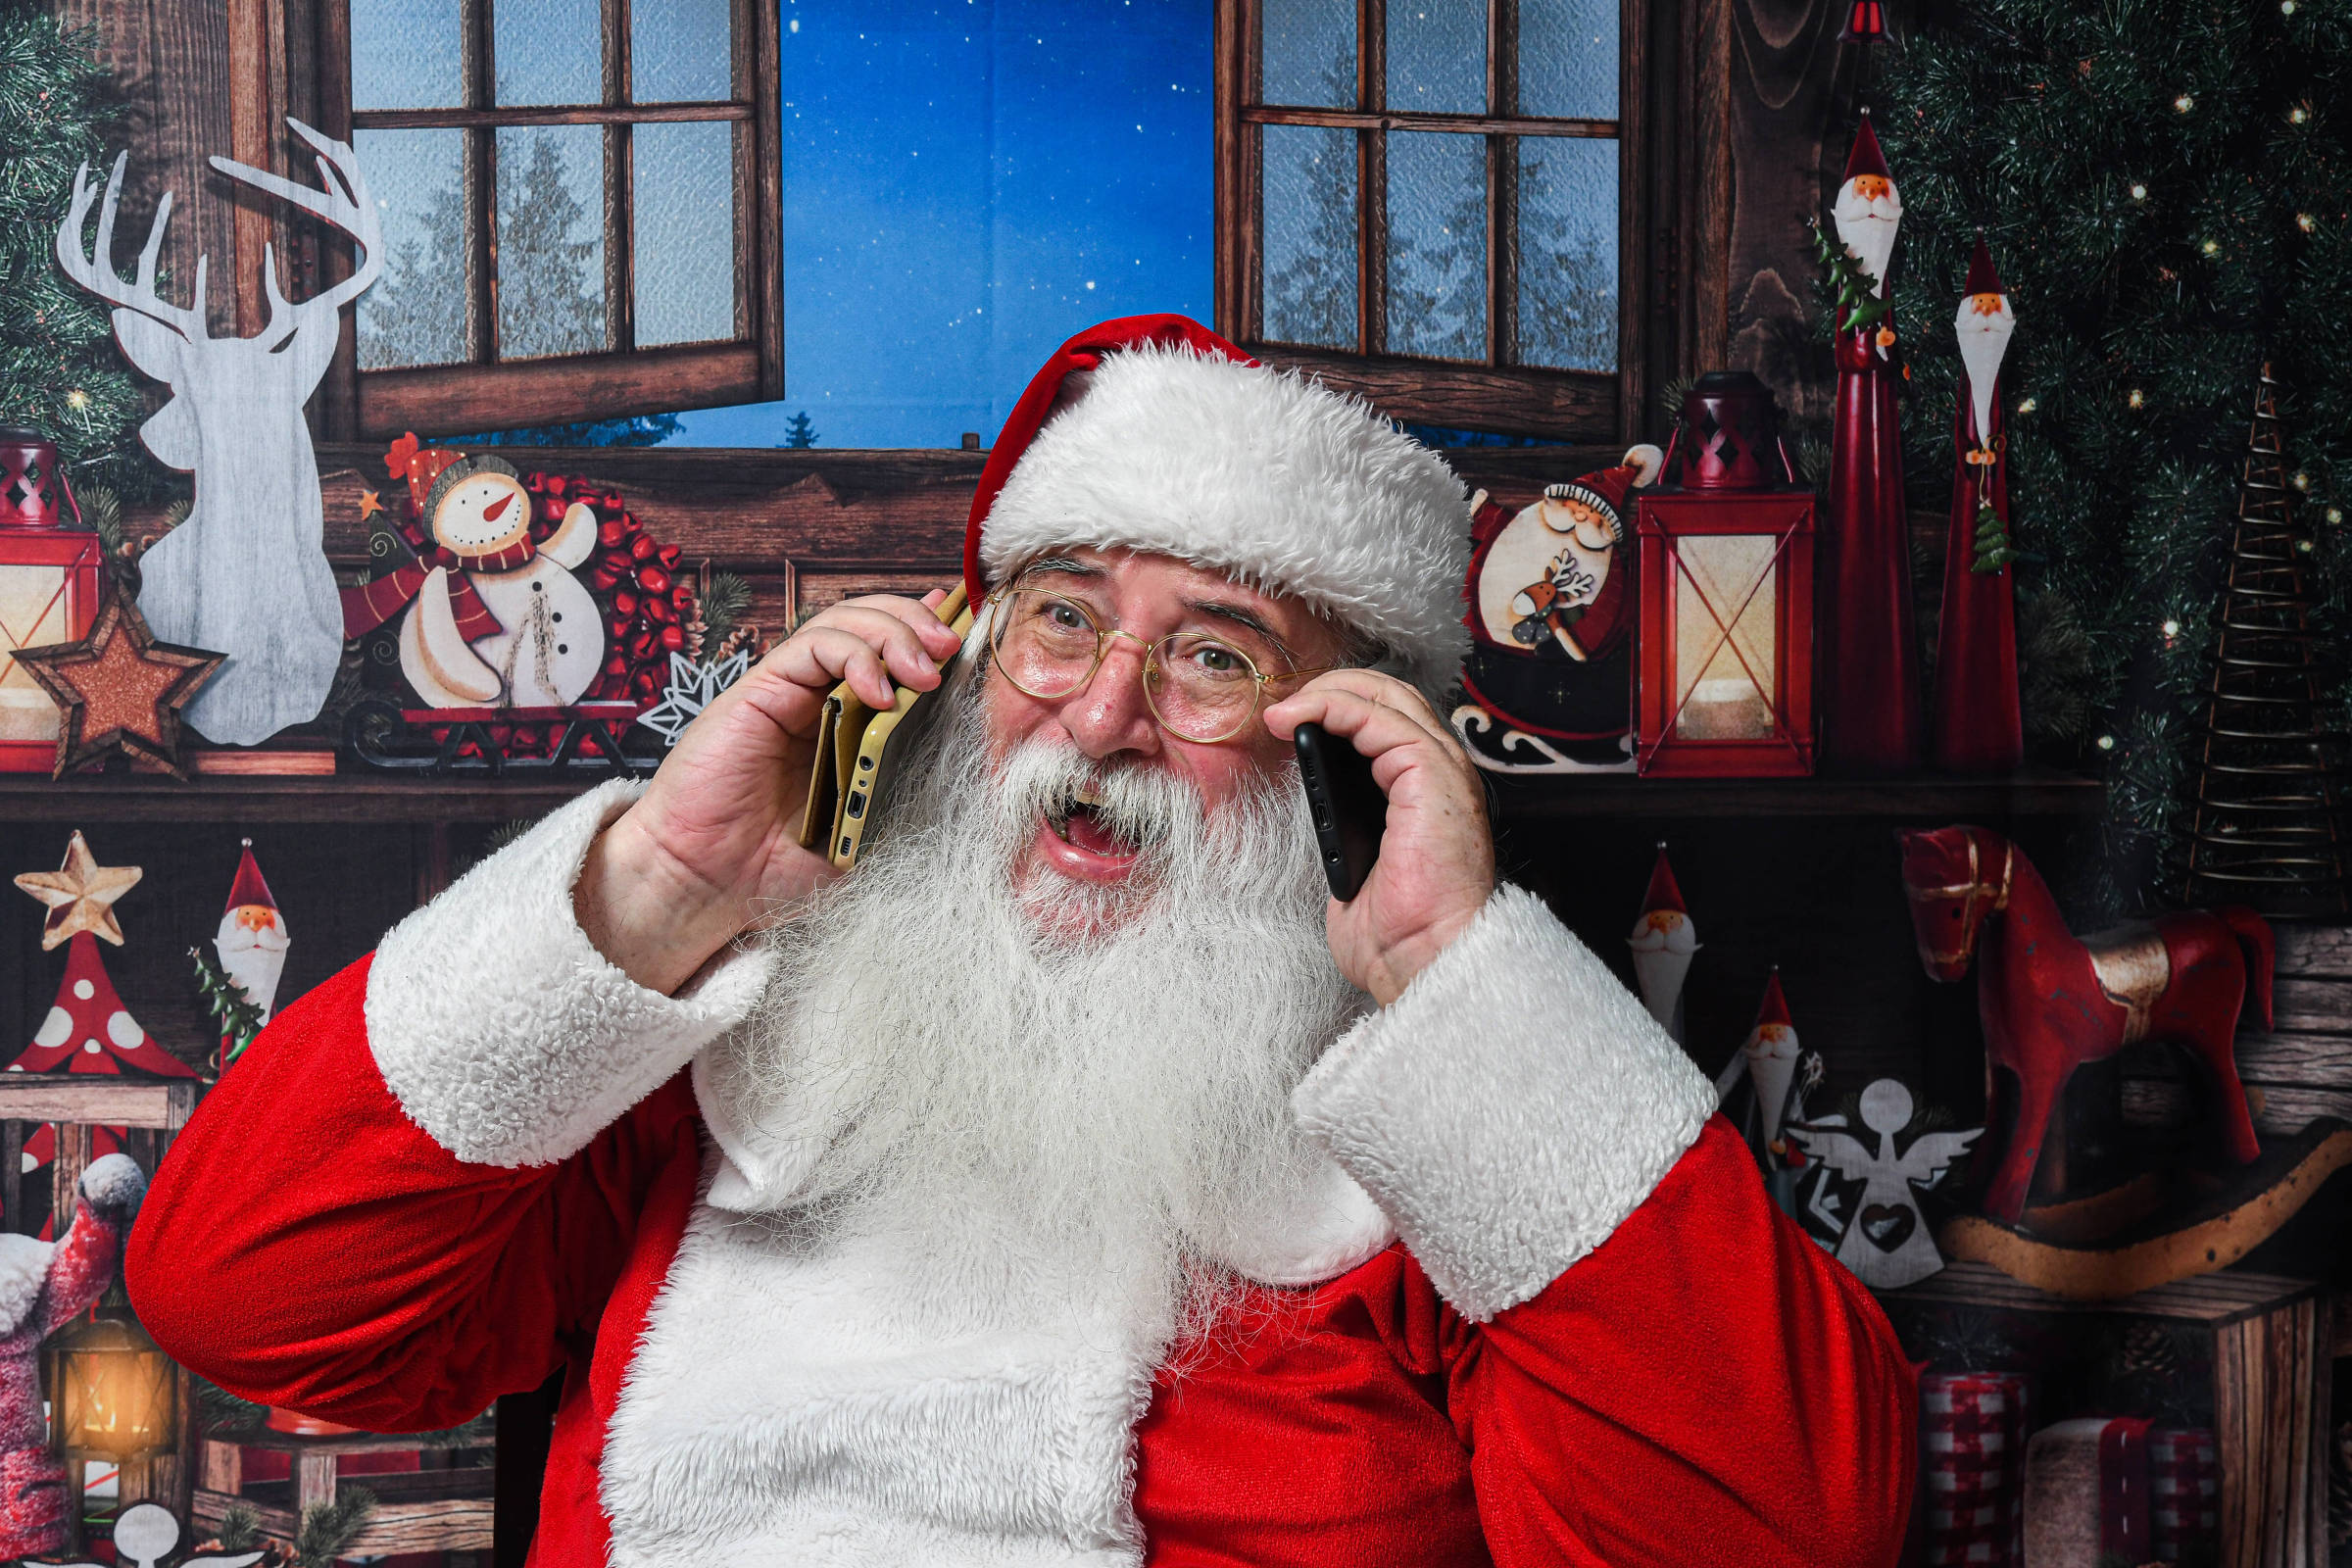 Papai Noel - Baixe gratuitamente em nosso site - Seu Post